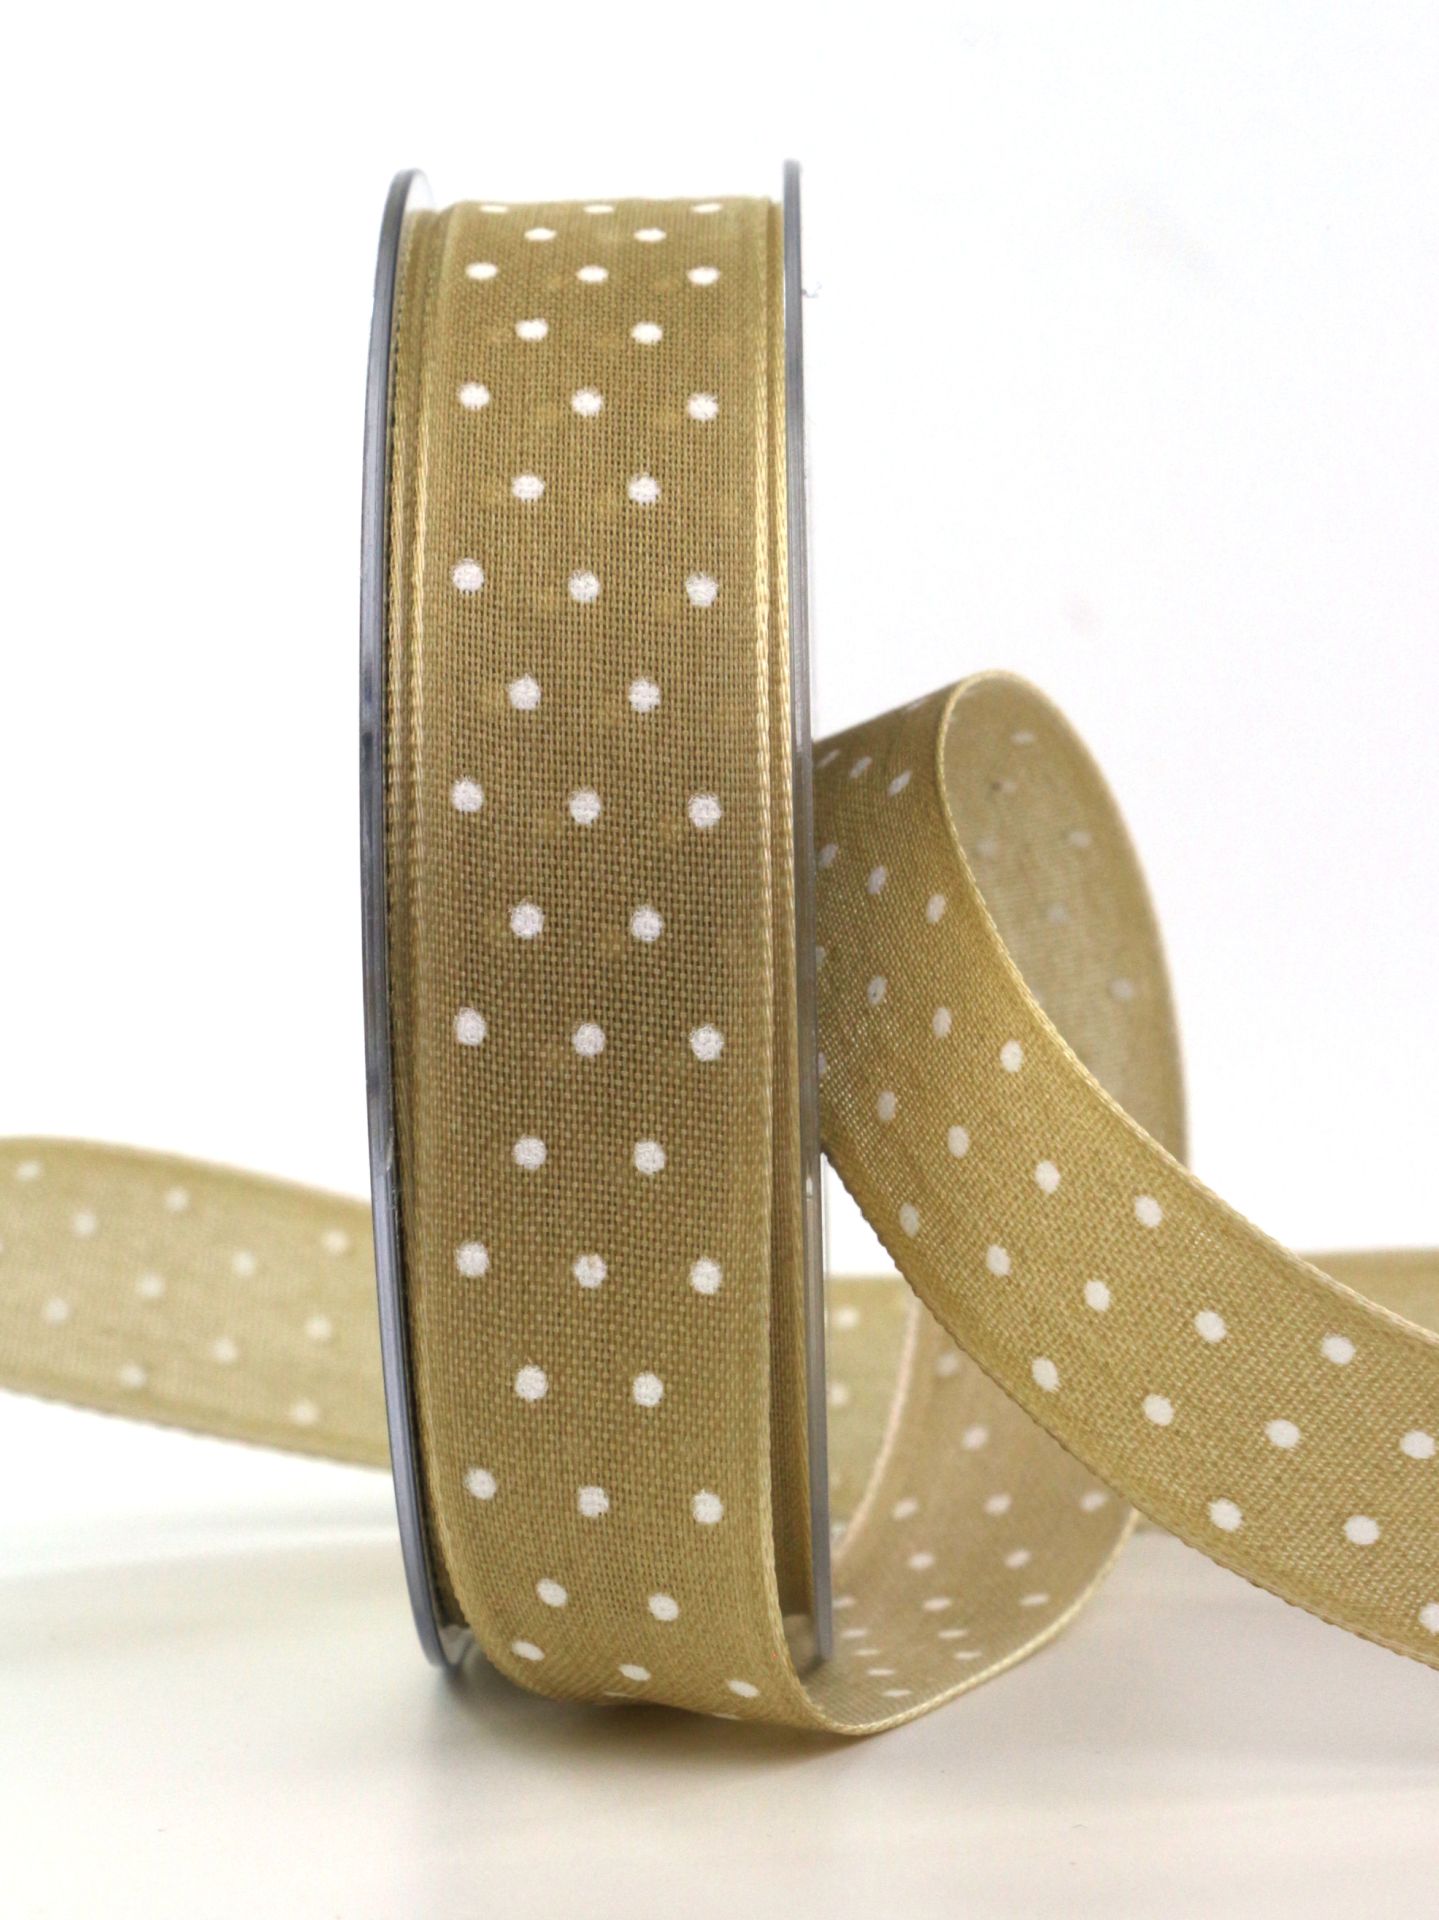 Leinenband mit Punkten, braun, 25 mm breit, 20 m Rolle - geschenkband, geschenkband-gemustert, geschenkband-mit-punkten